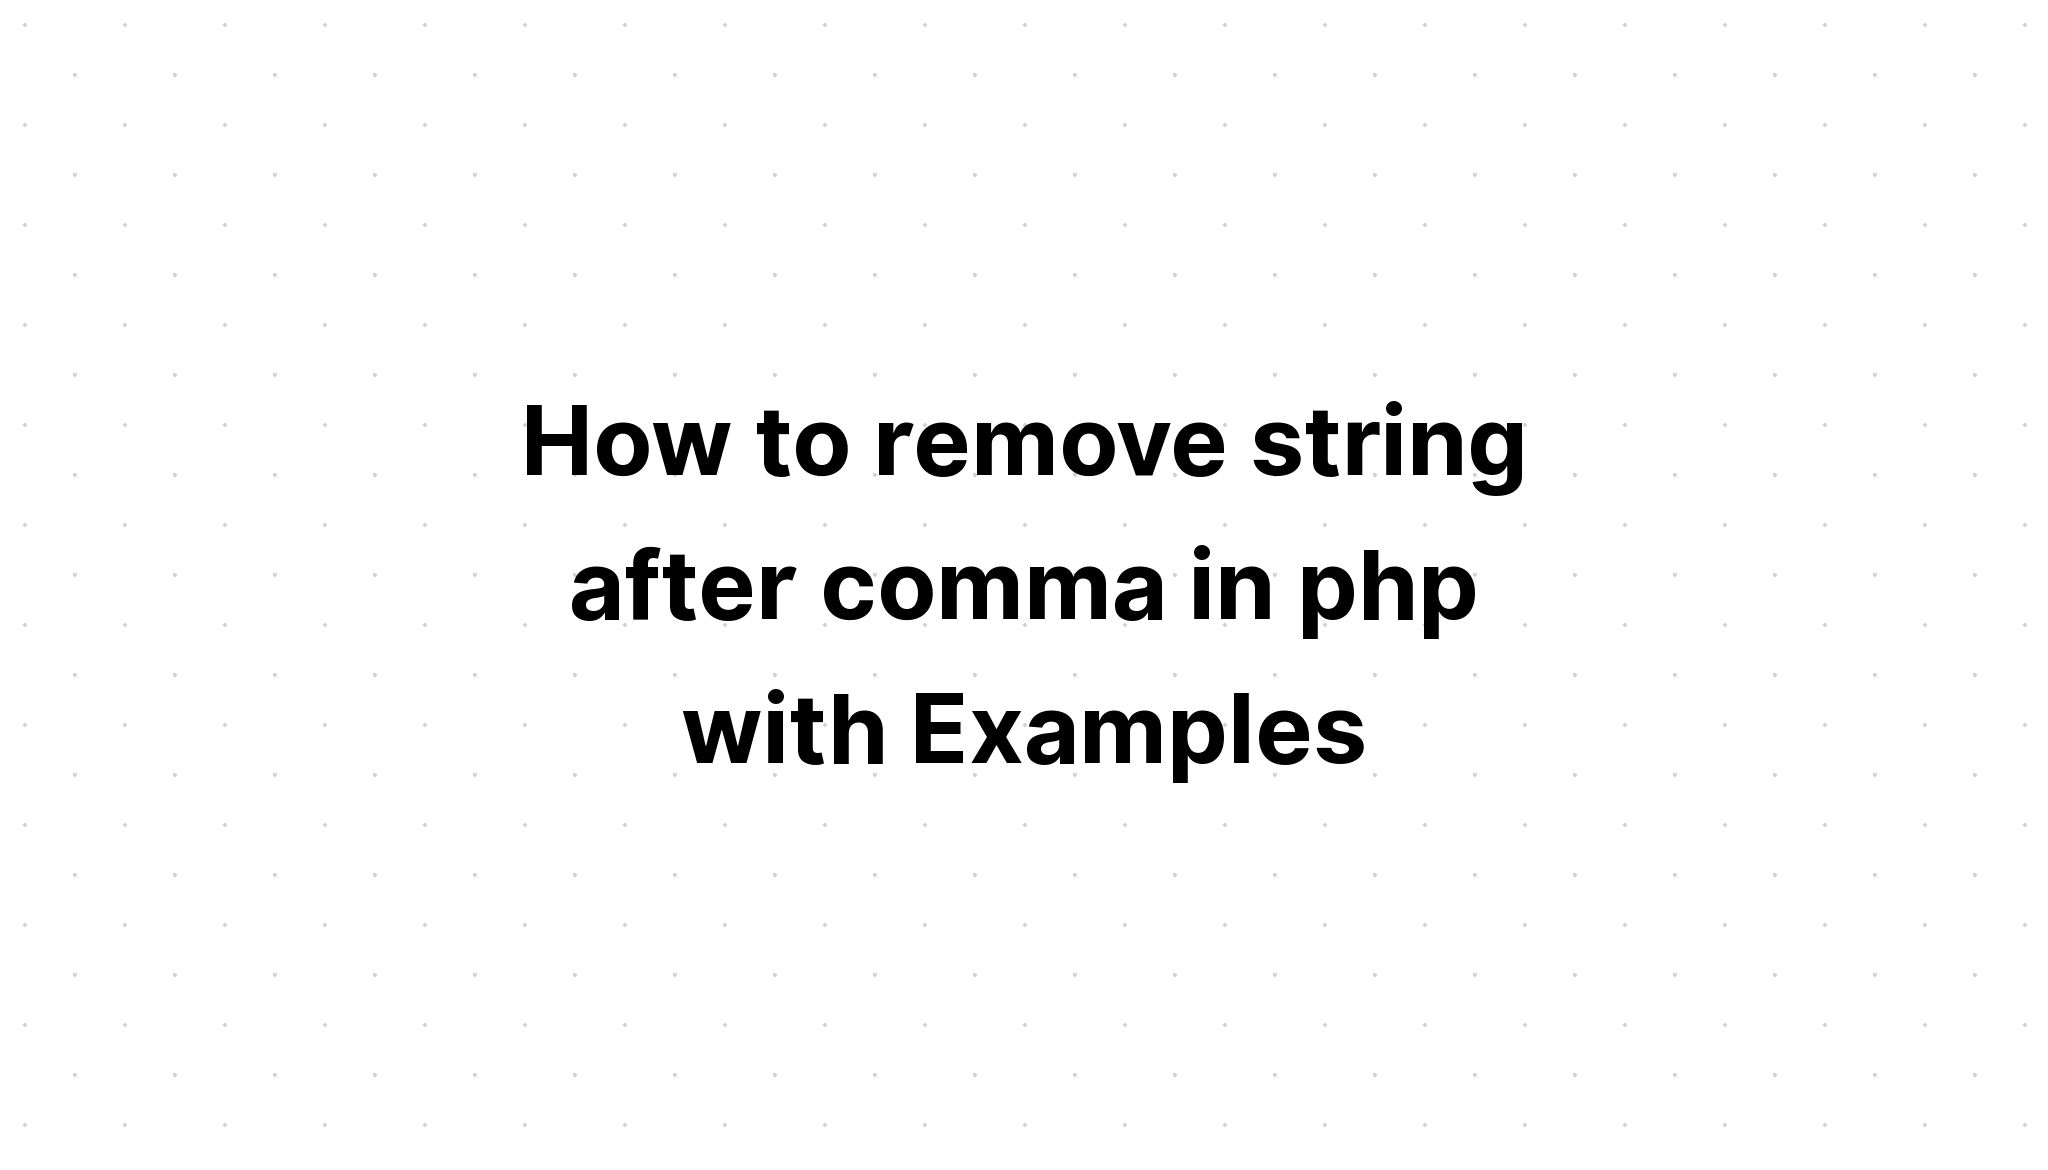 Cara menghapus string setelah koma di php dengan Contoh